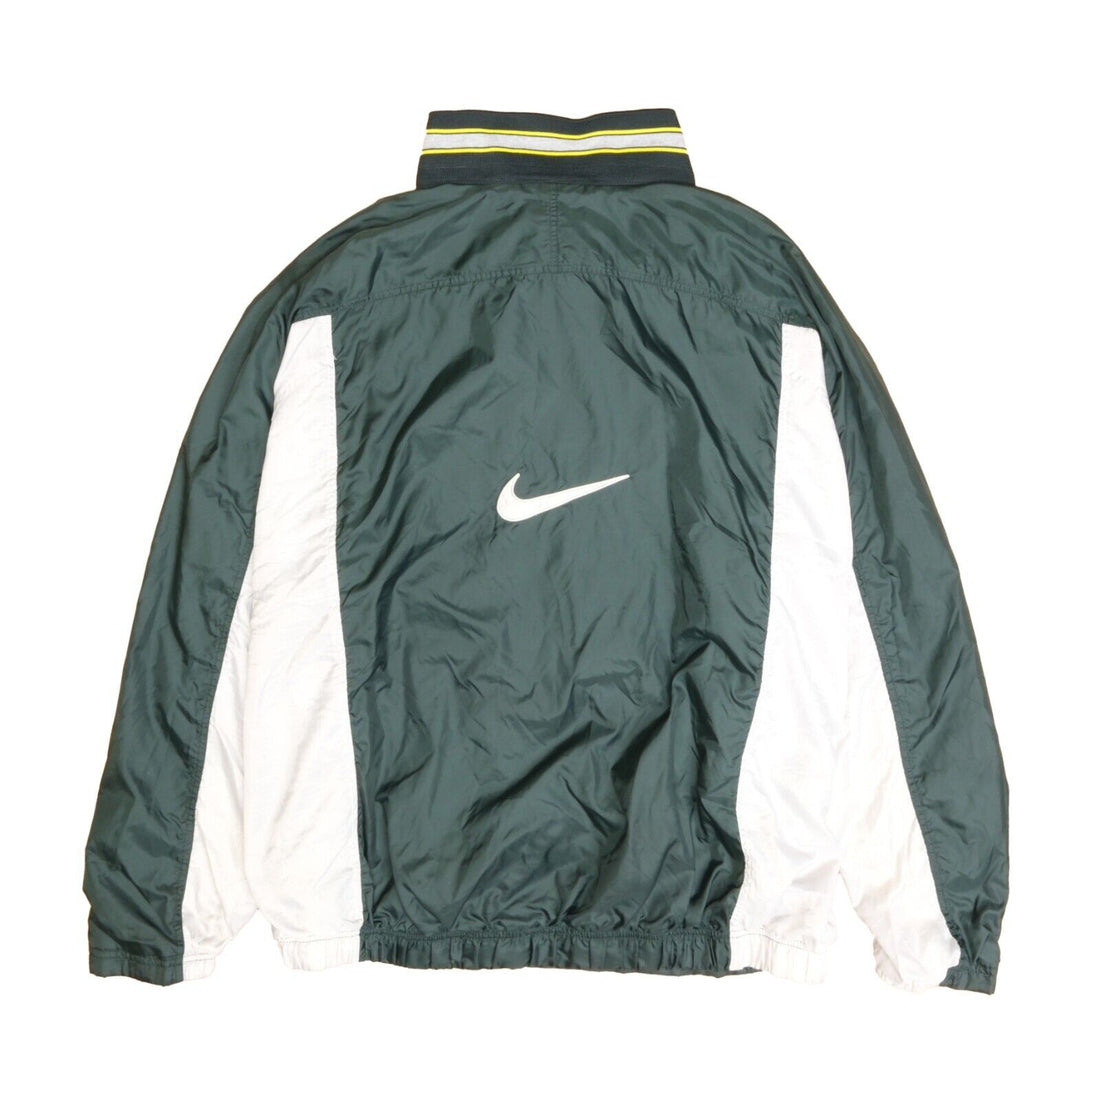 Vintage Nike Anorak Windbreaker Light Jacket Size 2XL Green 90s